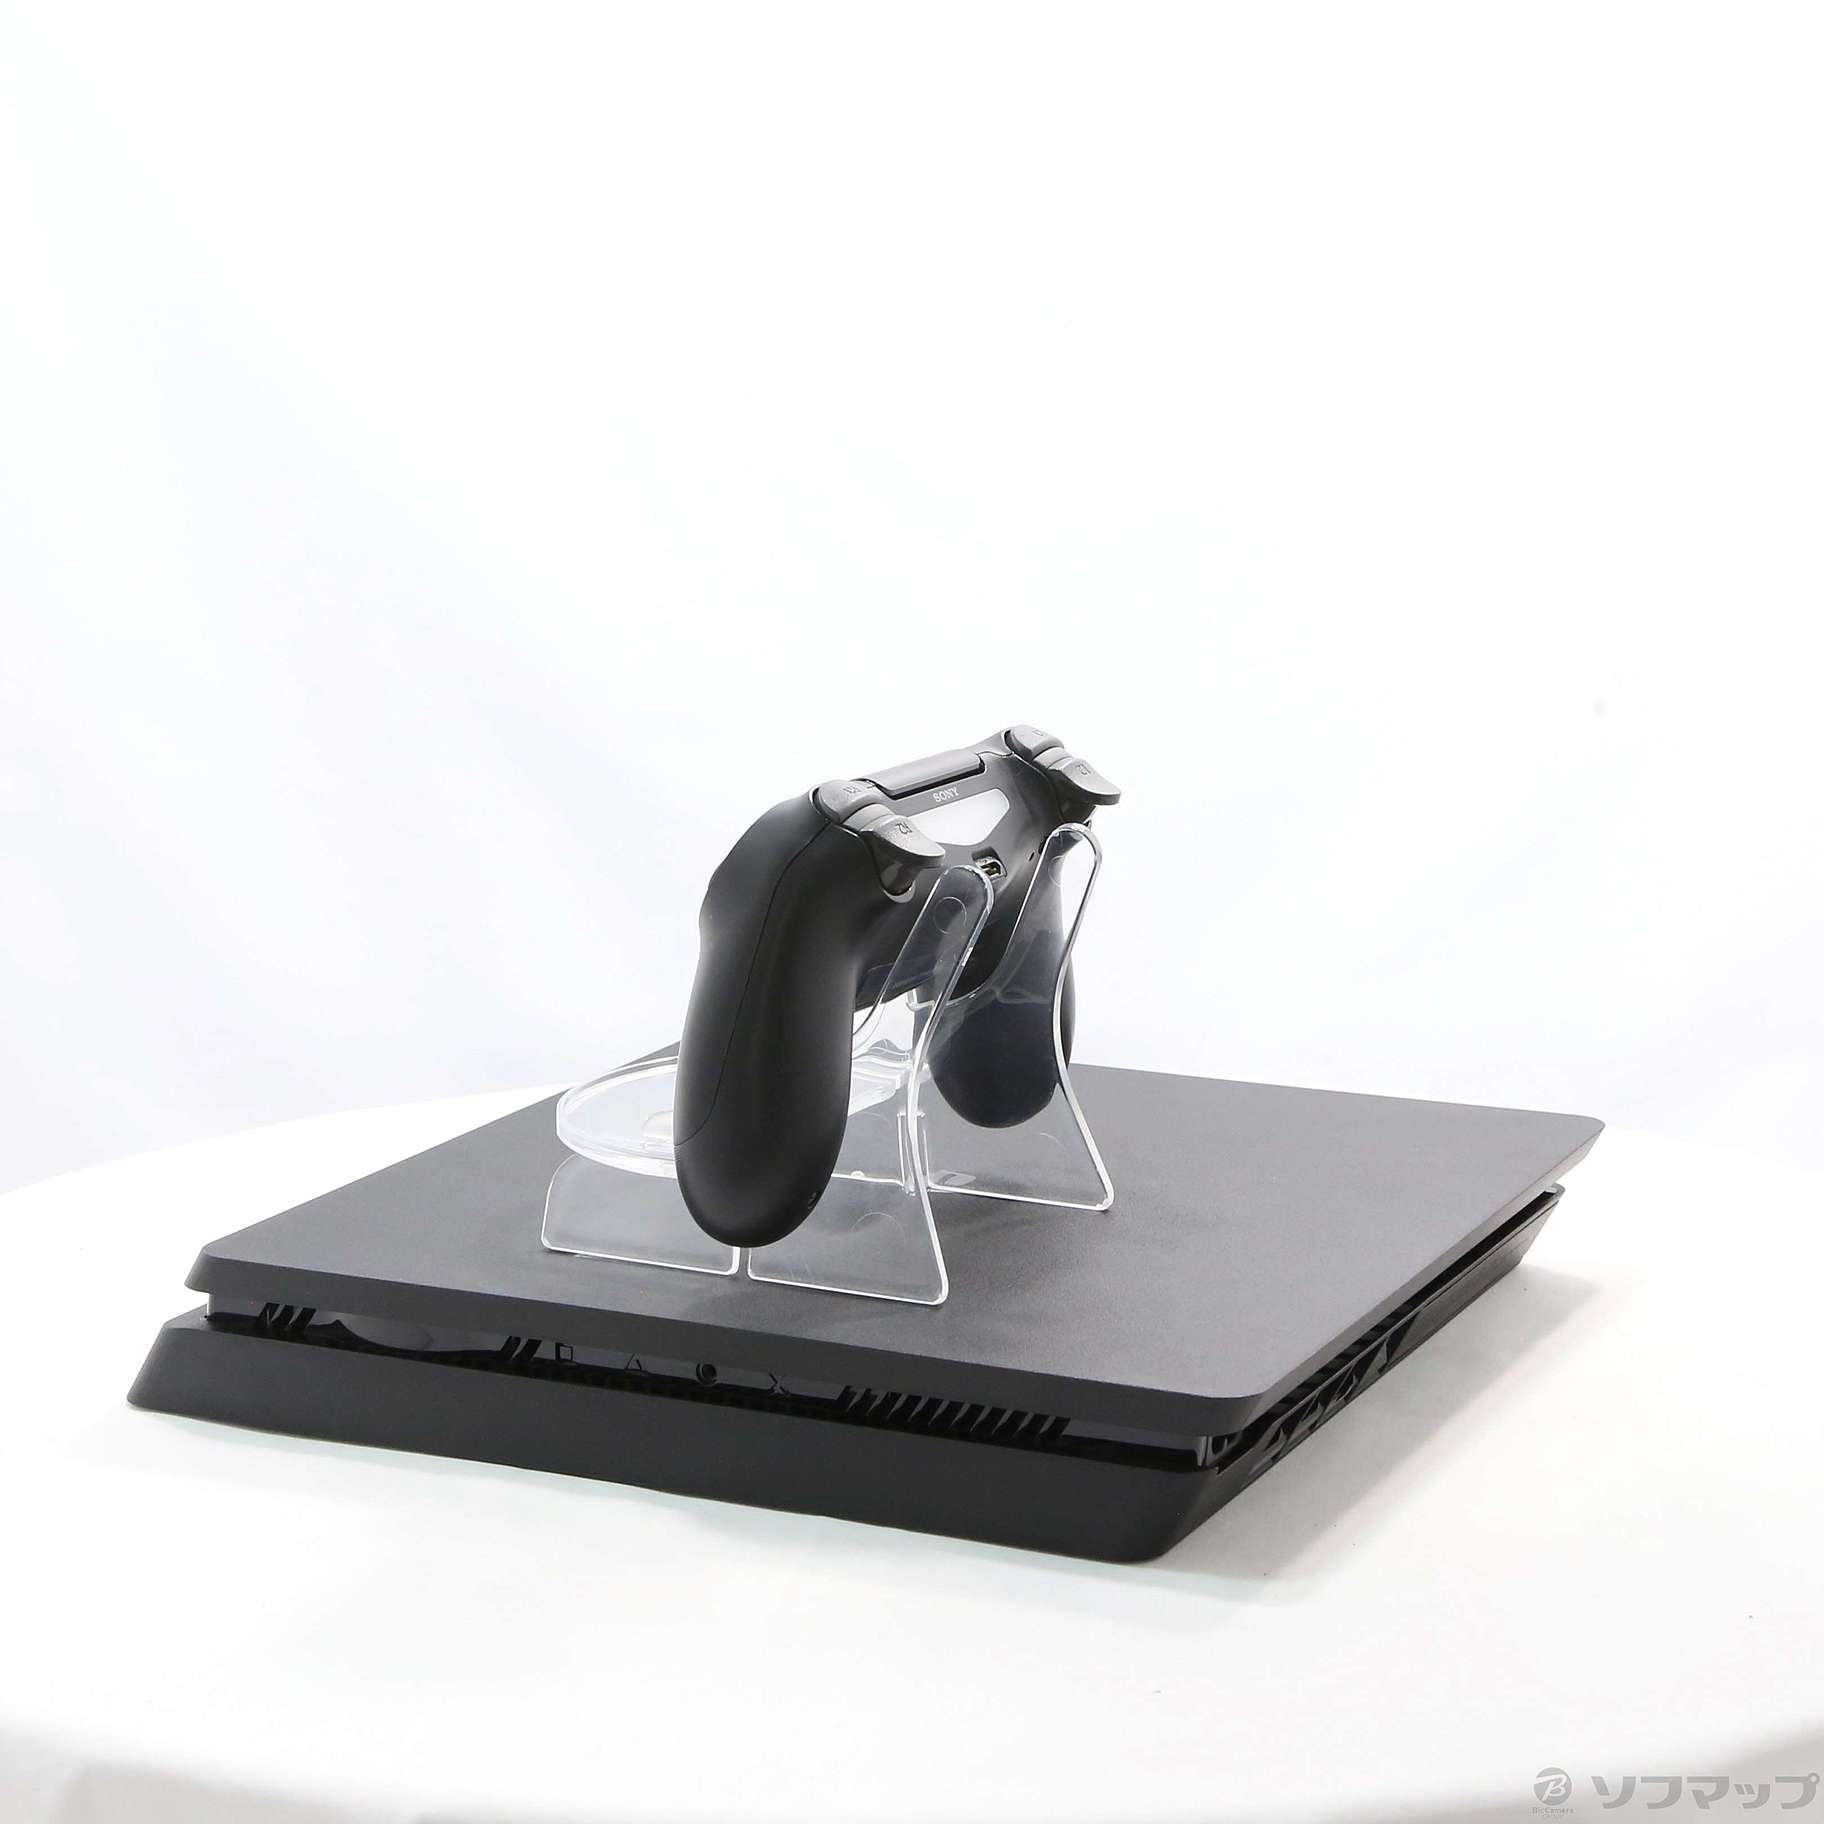 中古】PlayStation 4 ジェット・ブラック CUH-2200AB01 ◇02/10(金